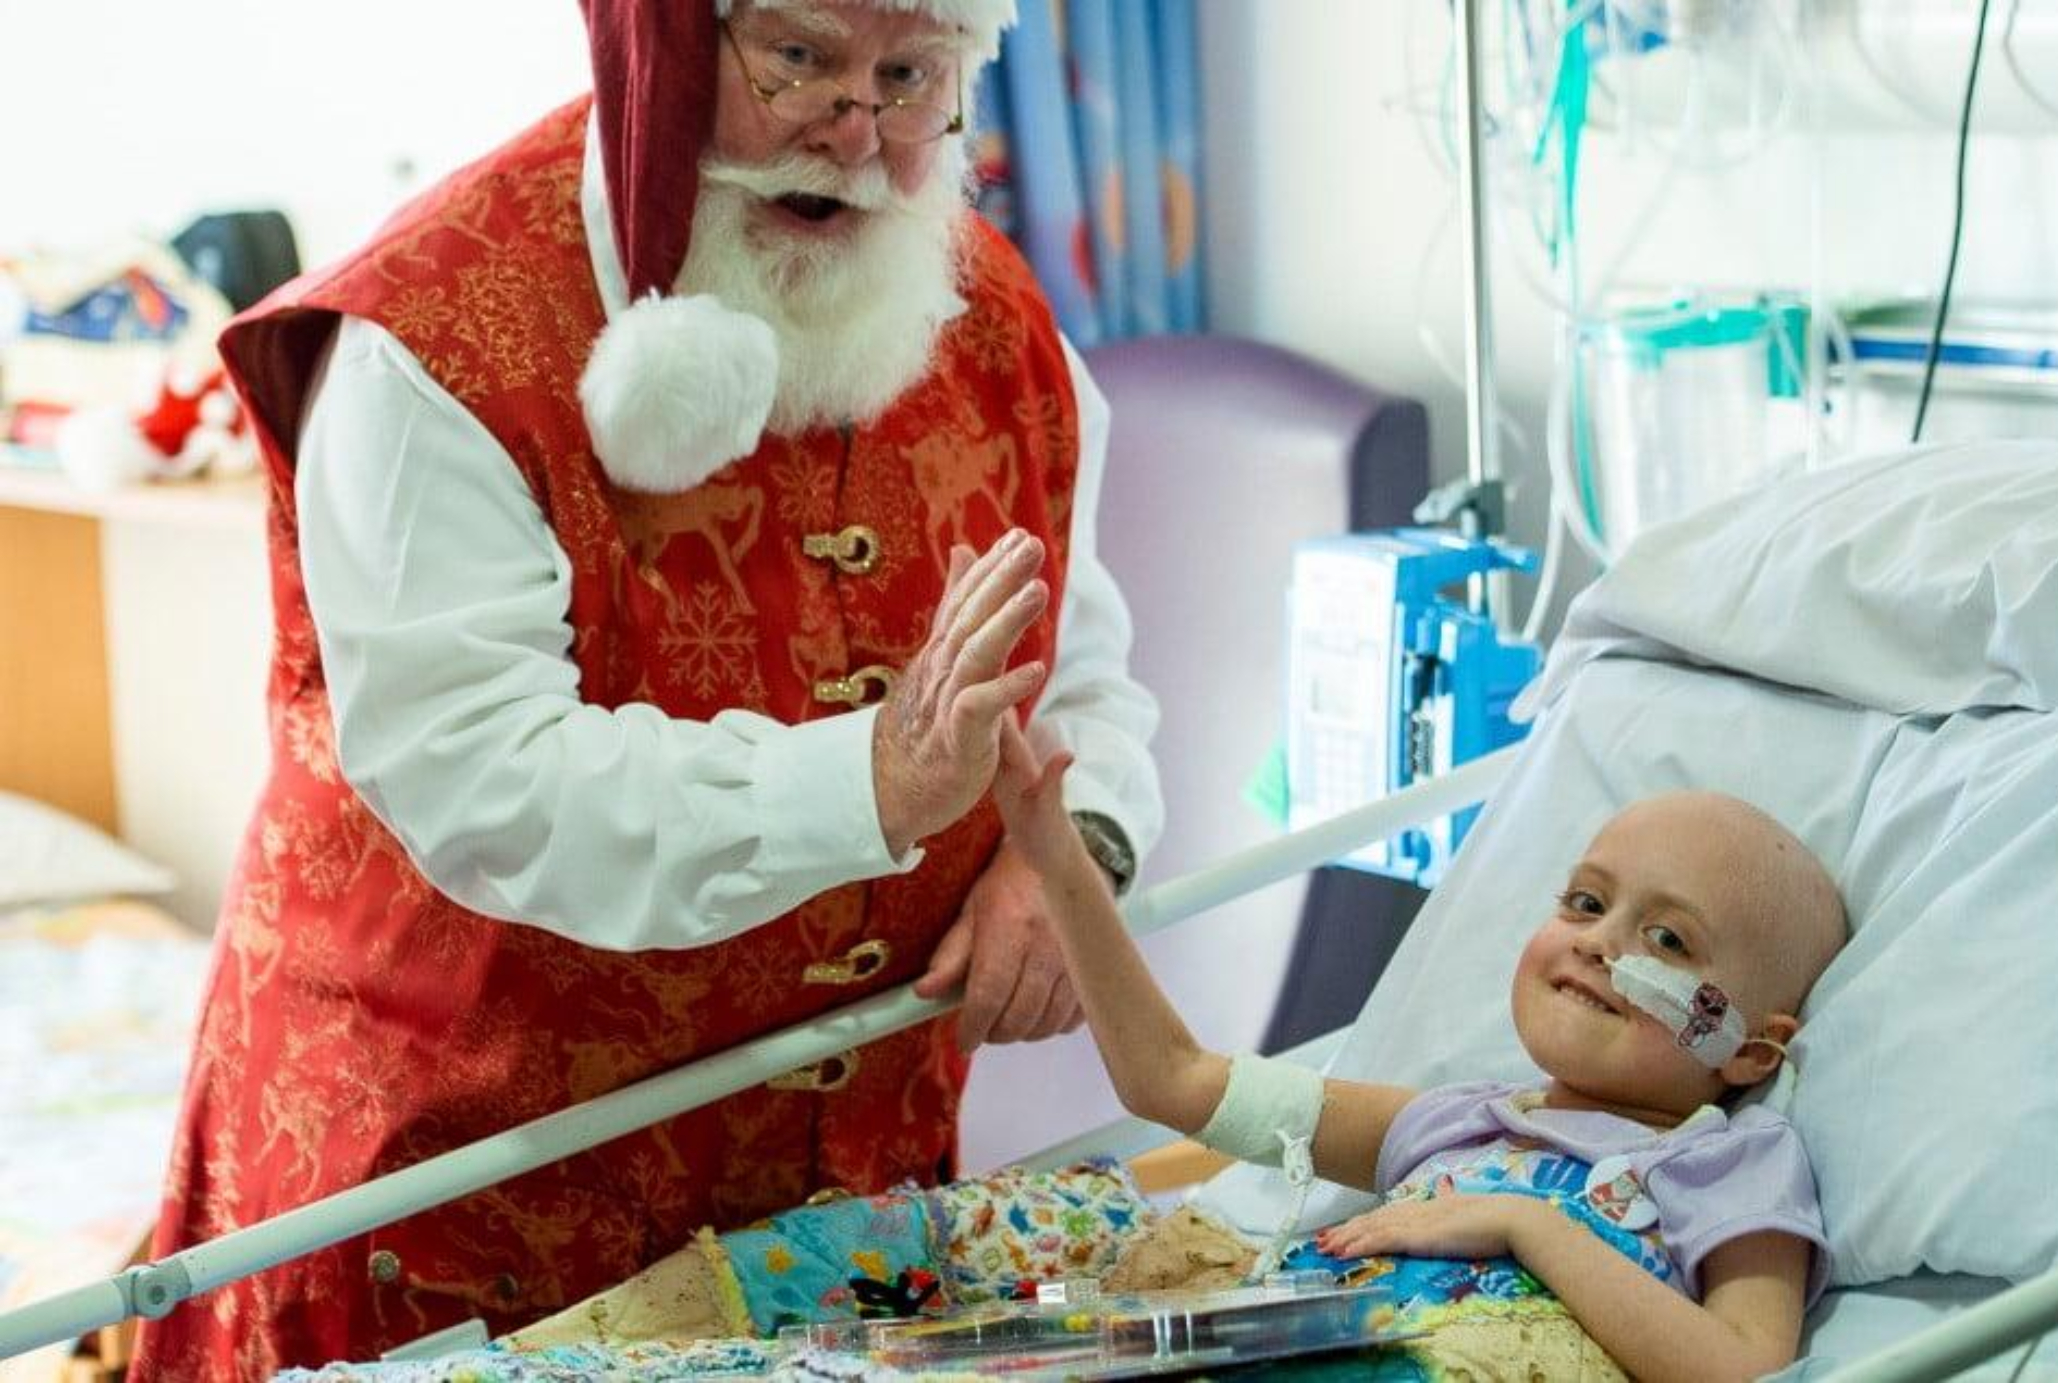 Χριστούγεννα μέρες αγάπης χαράς και γιορτής κάνε μία προσευχή για τα παιδιά που περιμένουν τον Άγιο Βασίλη στο νοσοκομείο